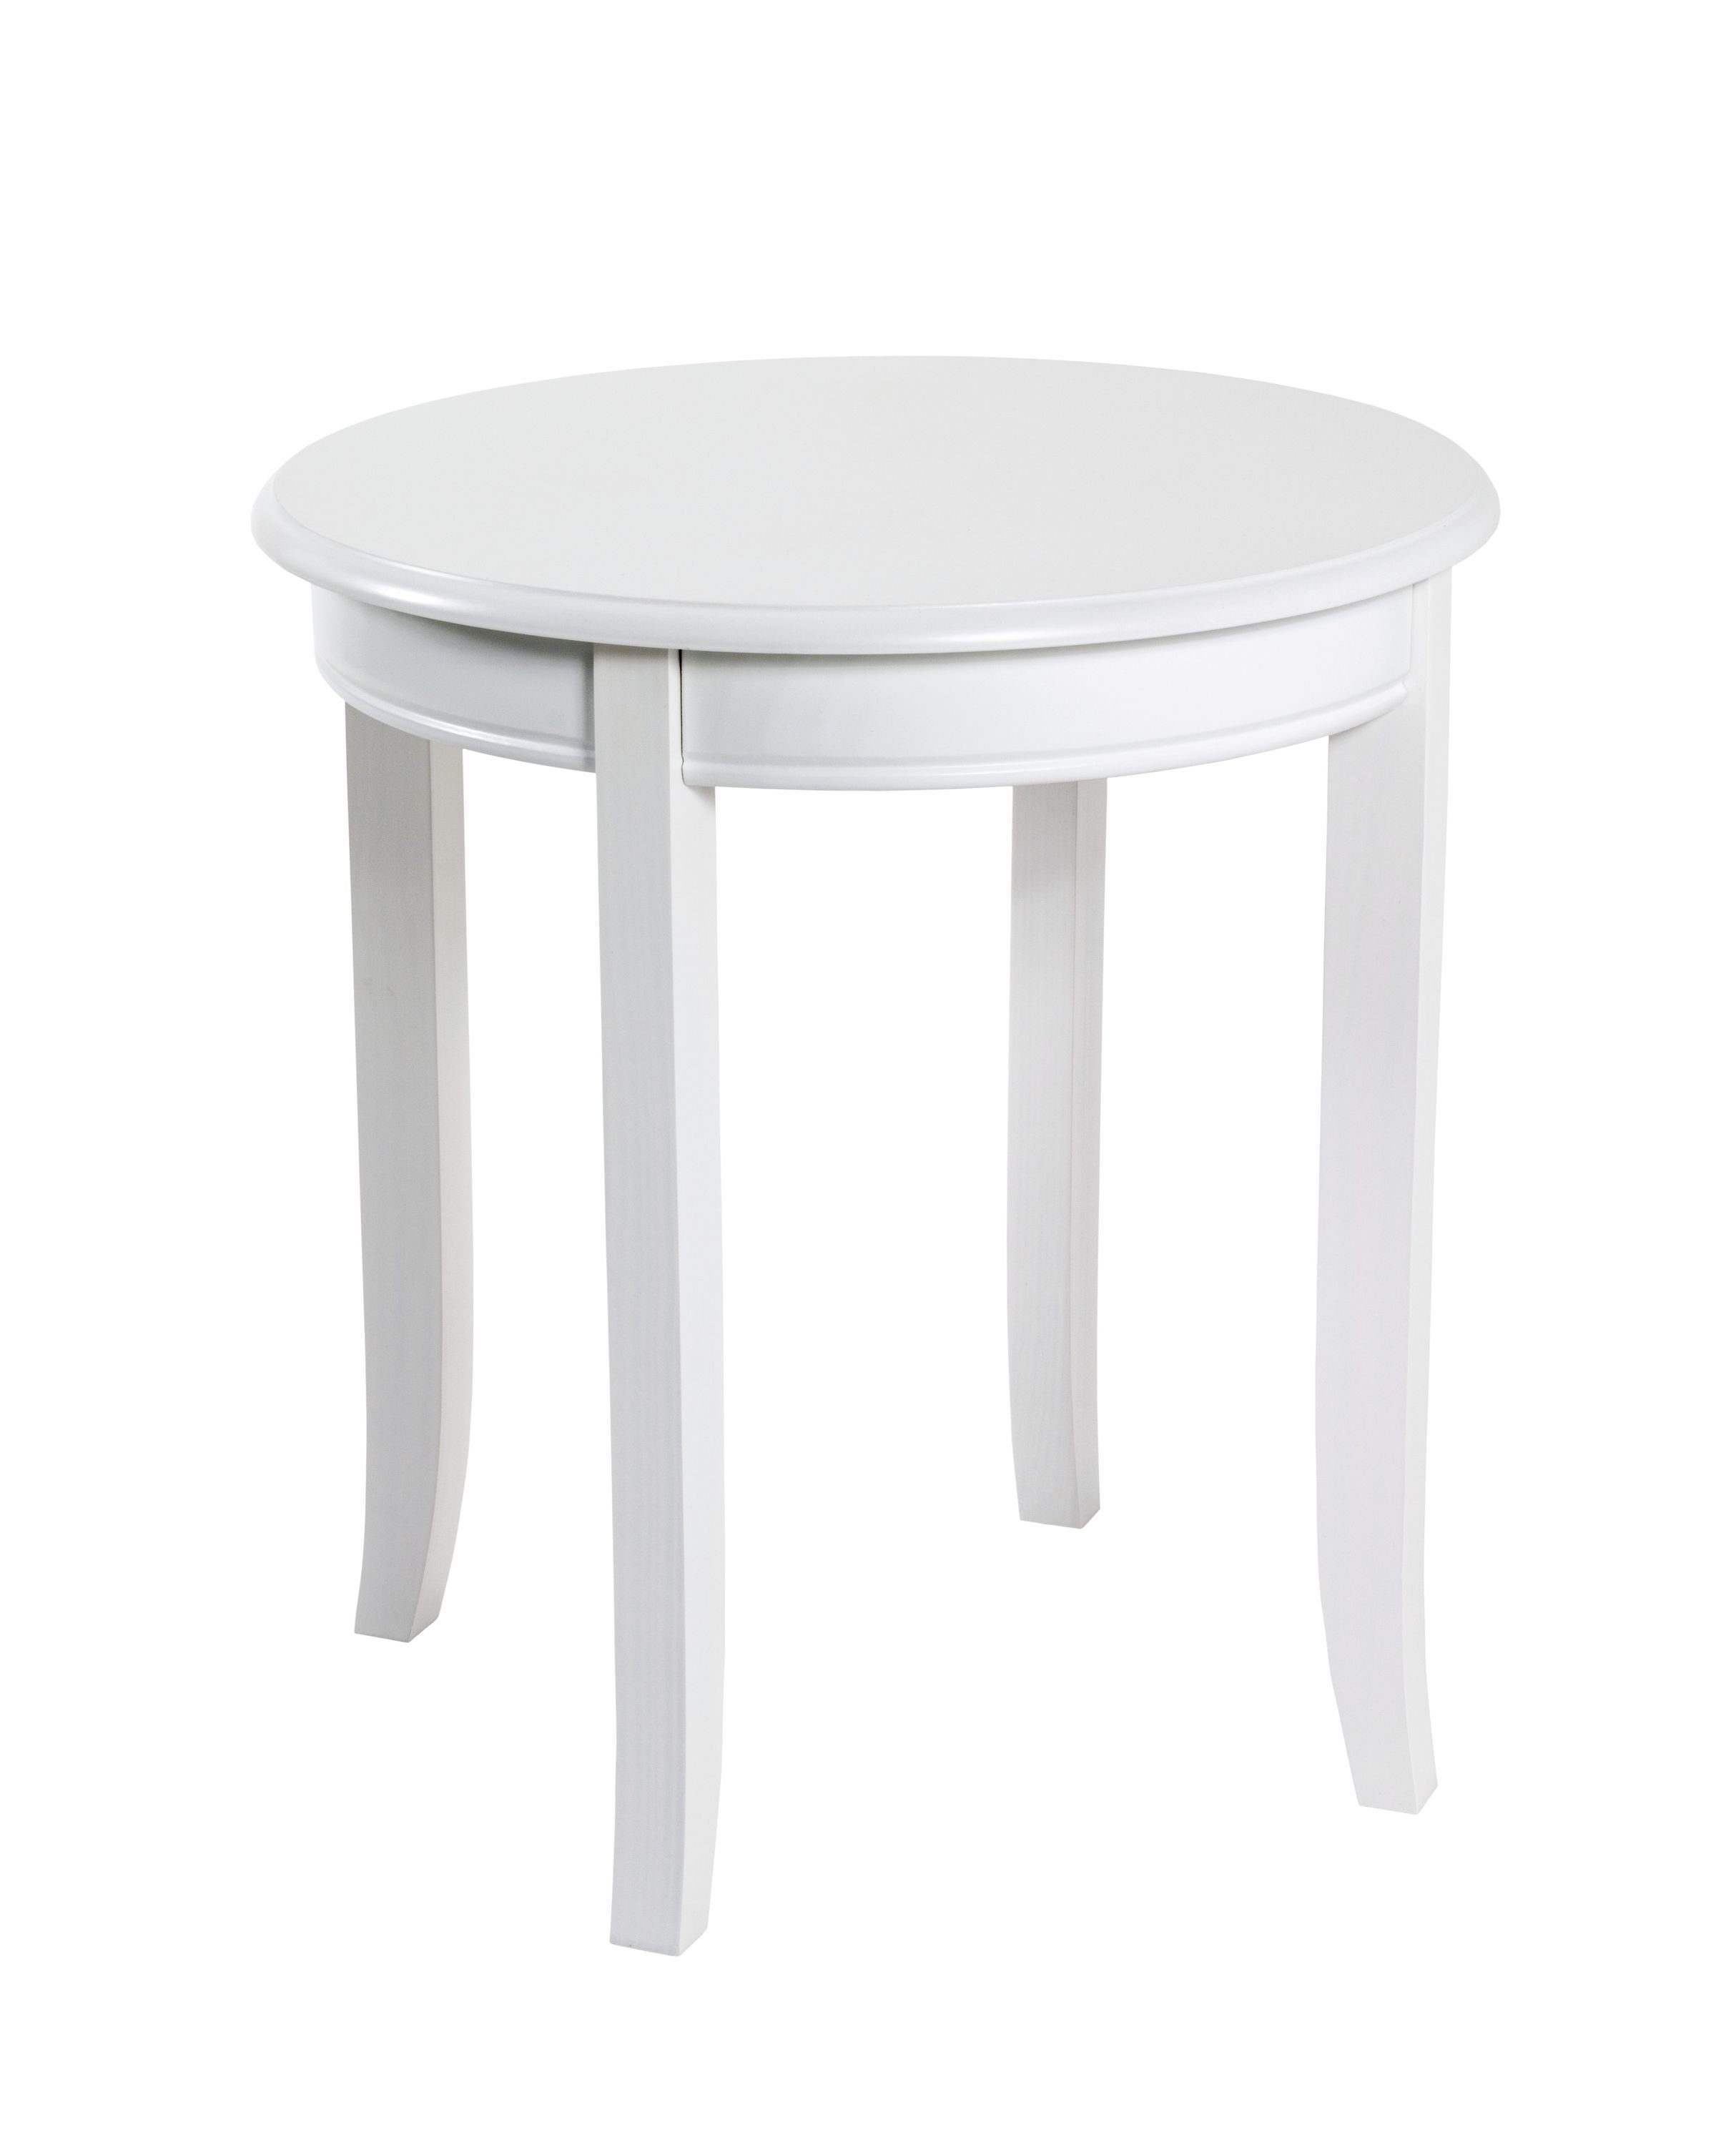 HAKU Beistelltisch Beistelltisch, HAKU Möbel Beistelltisch weiß (DH 48x51 cm) DH 48x51 cm weiß | Ablagetische